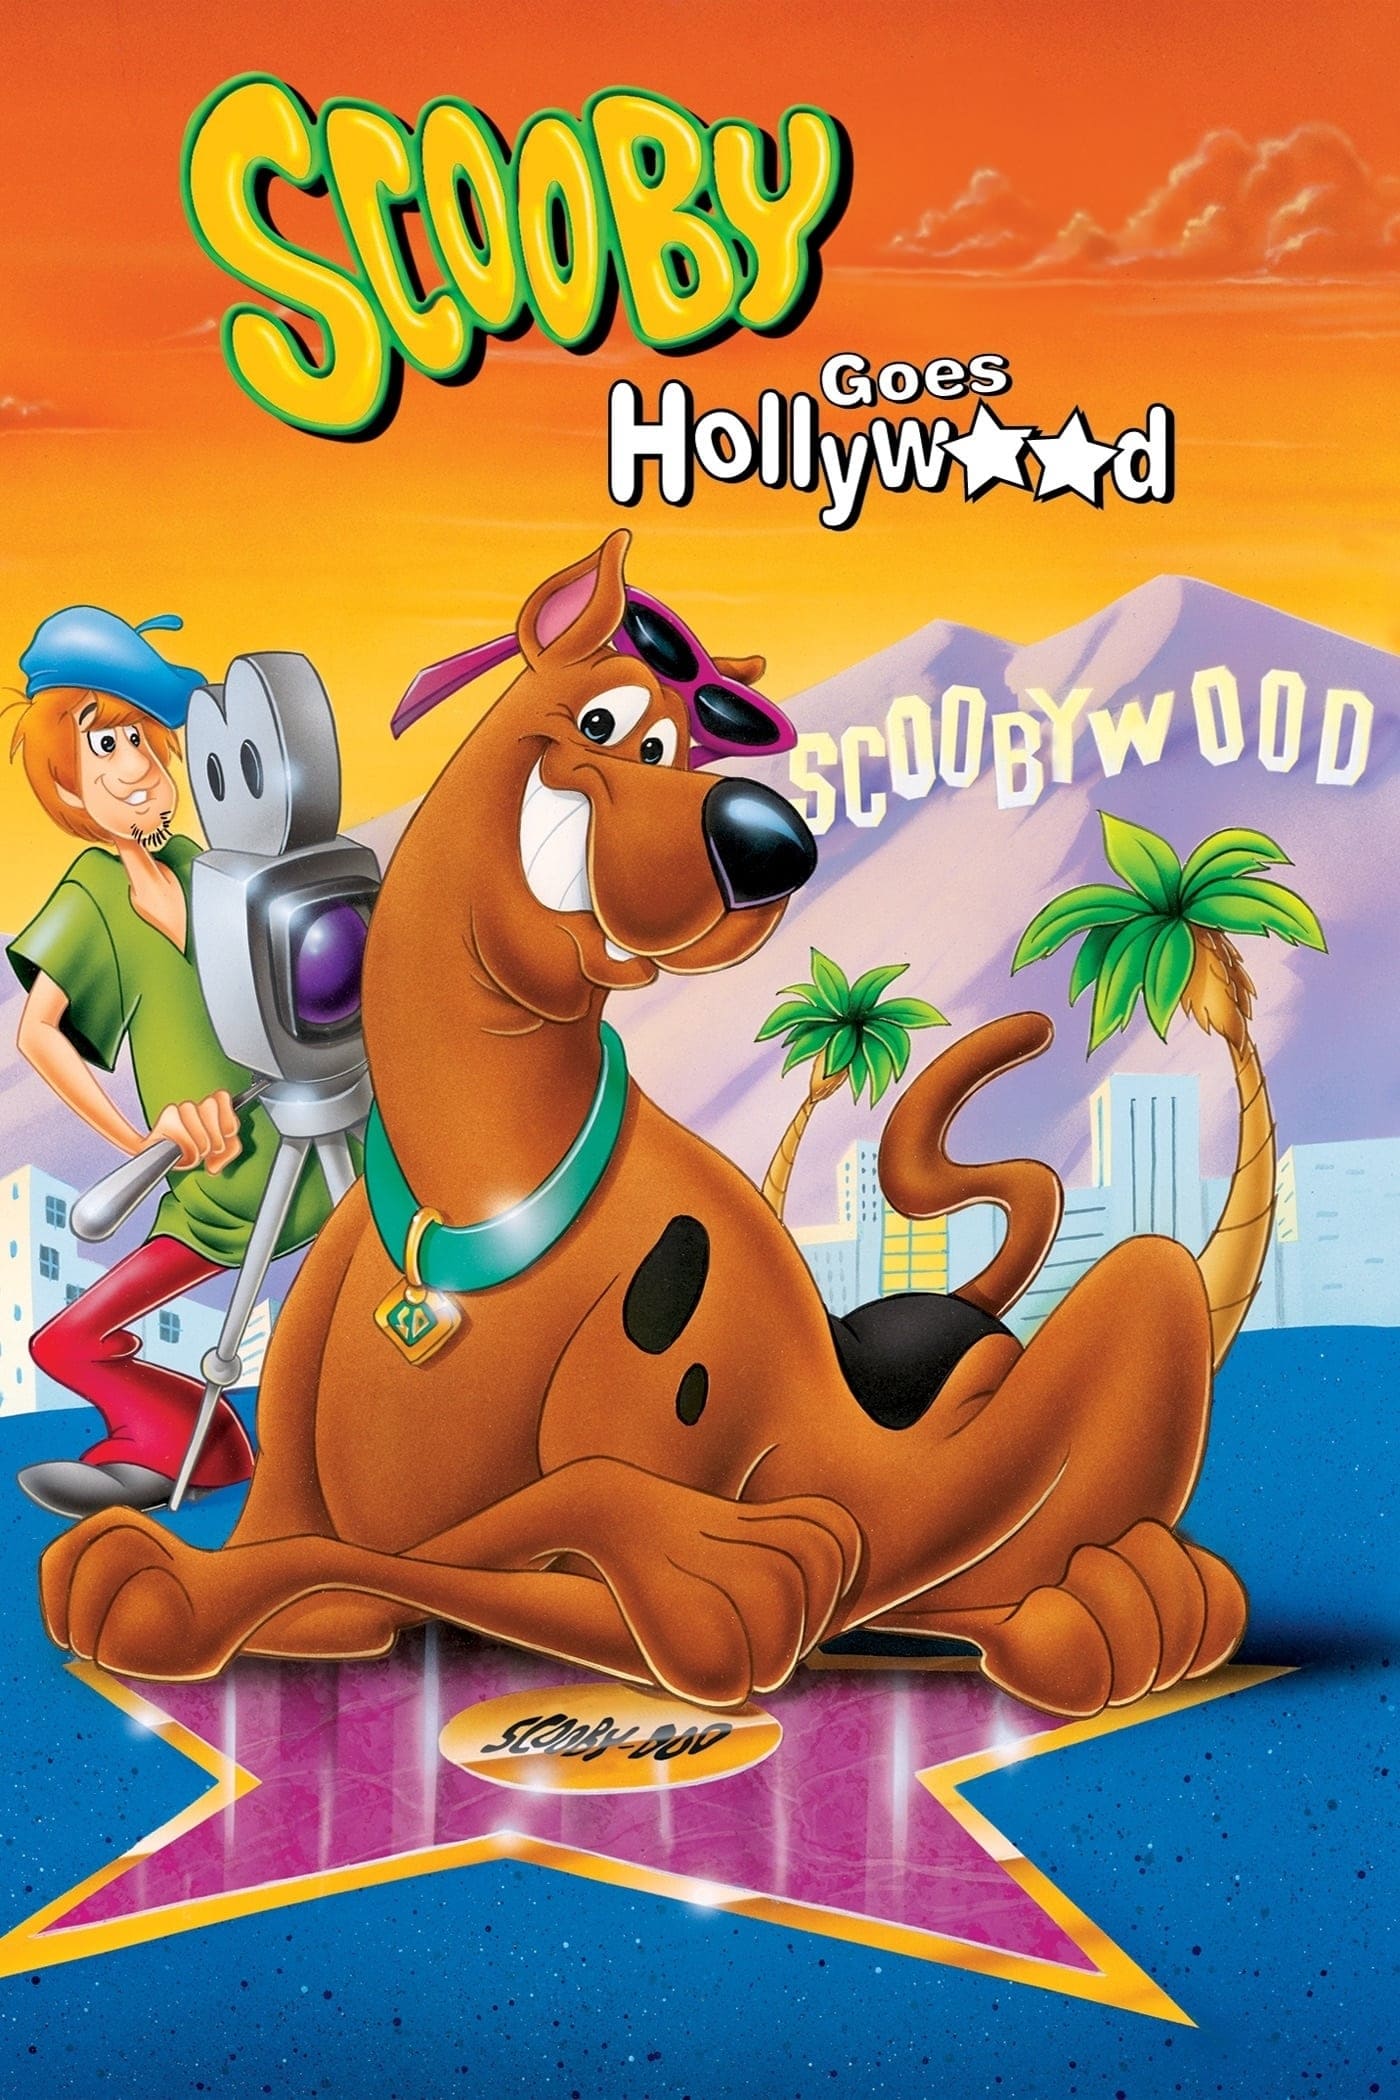 Scooby-Doo, actor de Hollywood (1980)